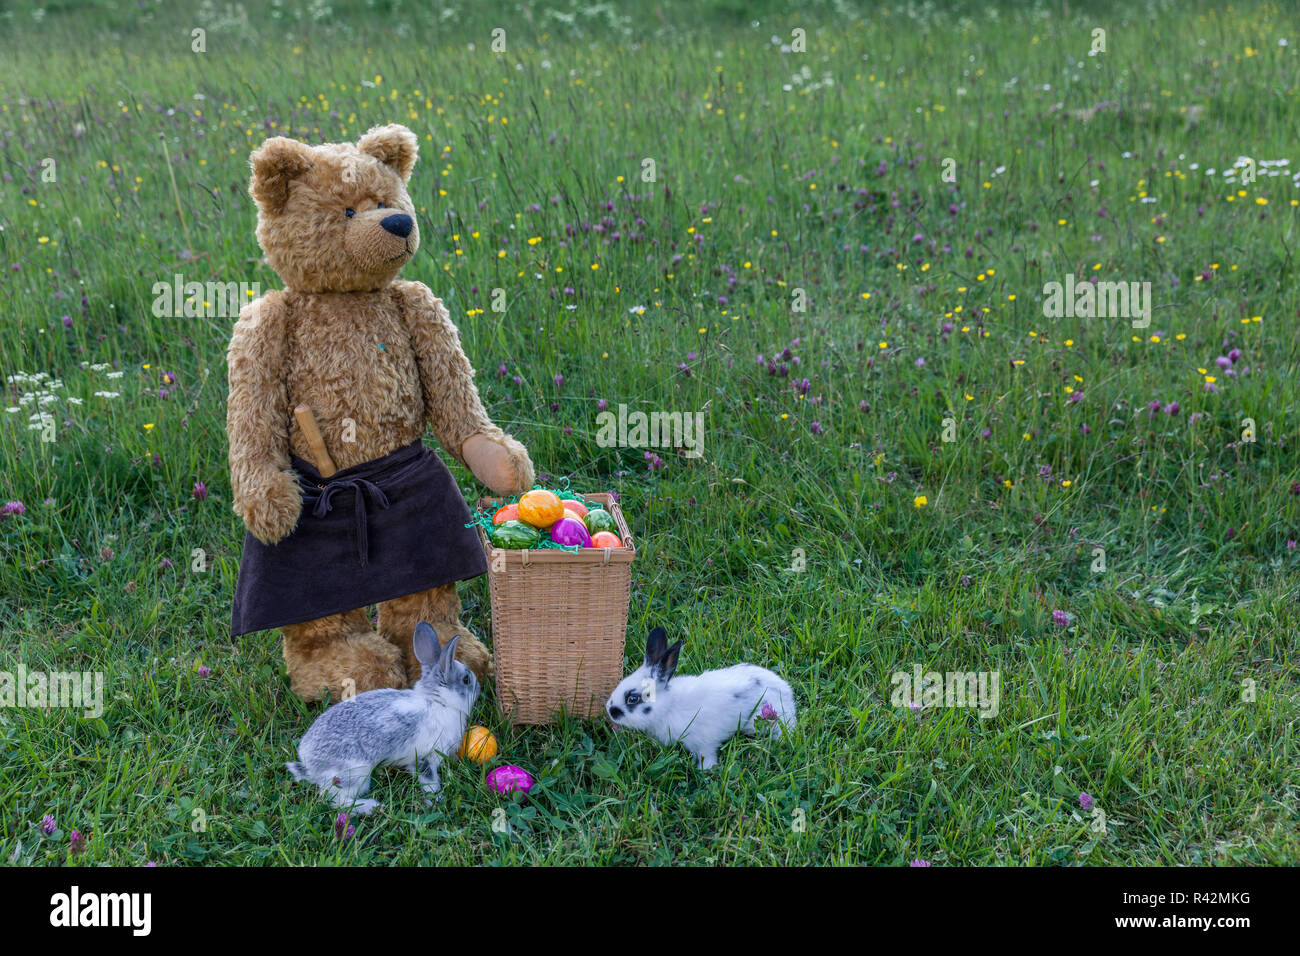 martin bears Stock Photo